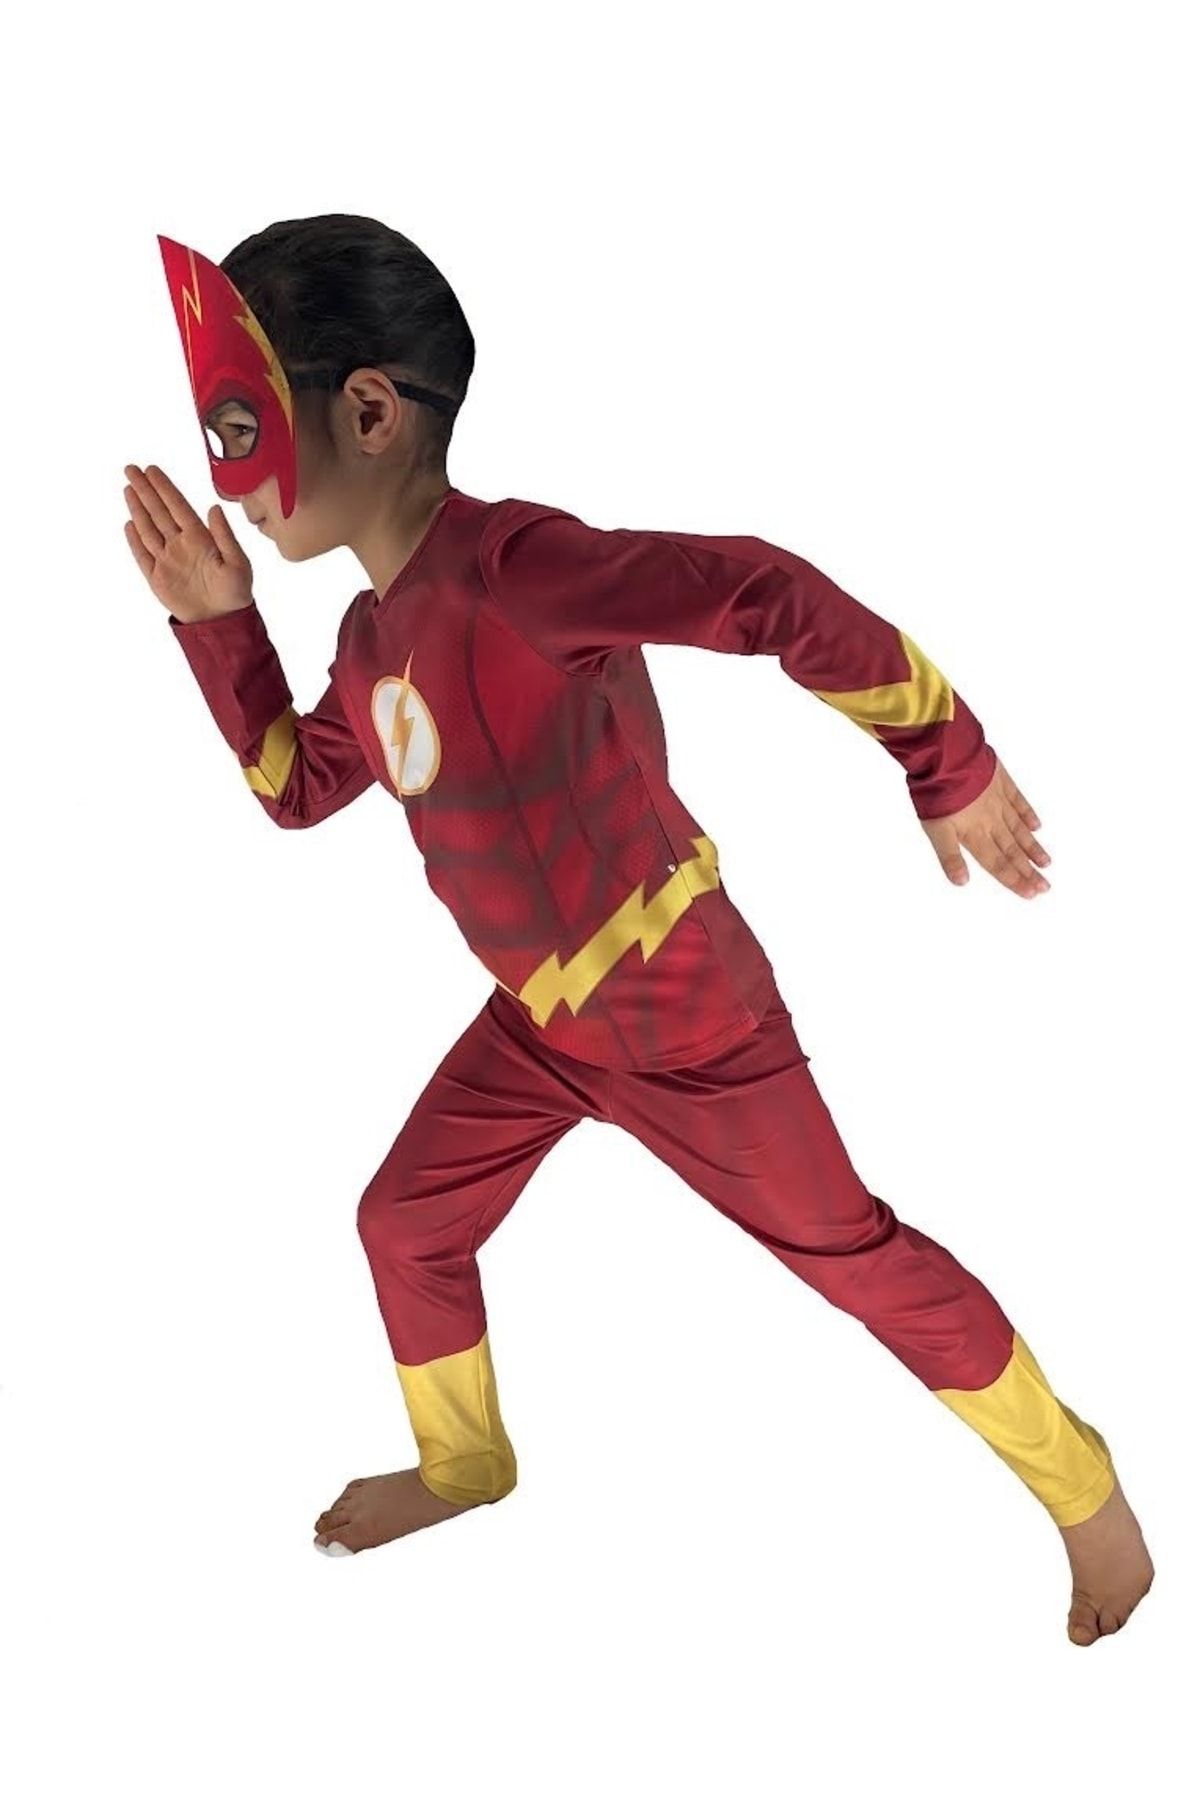 Moni Erkek Çocuk Maskeli 3d Kas Görünümlü Dijital Baskılı Flaş / Flash Kostümü